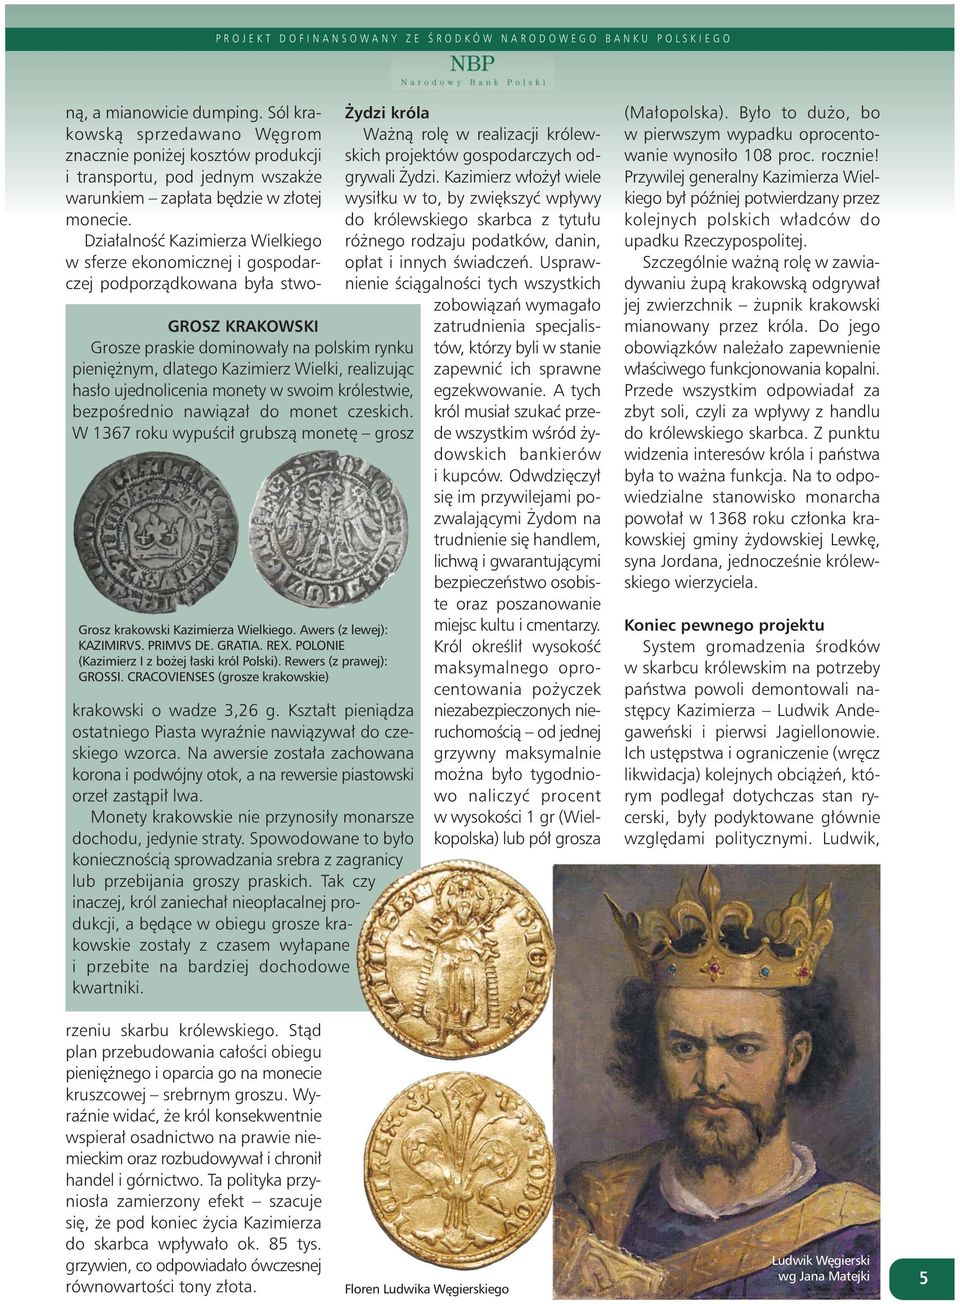 realizując hasło ujednolicenia monety w swoim królestwie, bezpośrednio nawiązał do monet czeskich. W 1367 roku wypuścił grubszą monetę grosz Grosz krakowski Kazimierza Wielkiego.